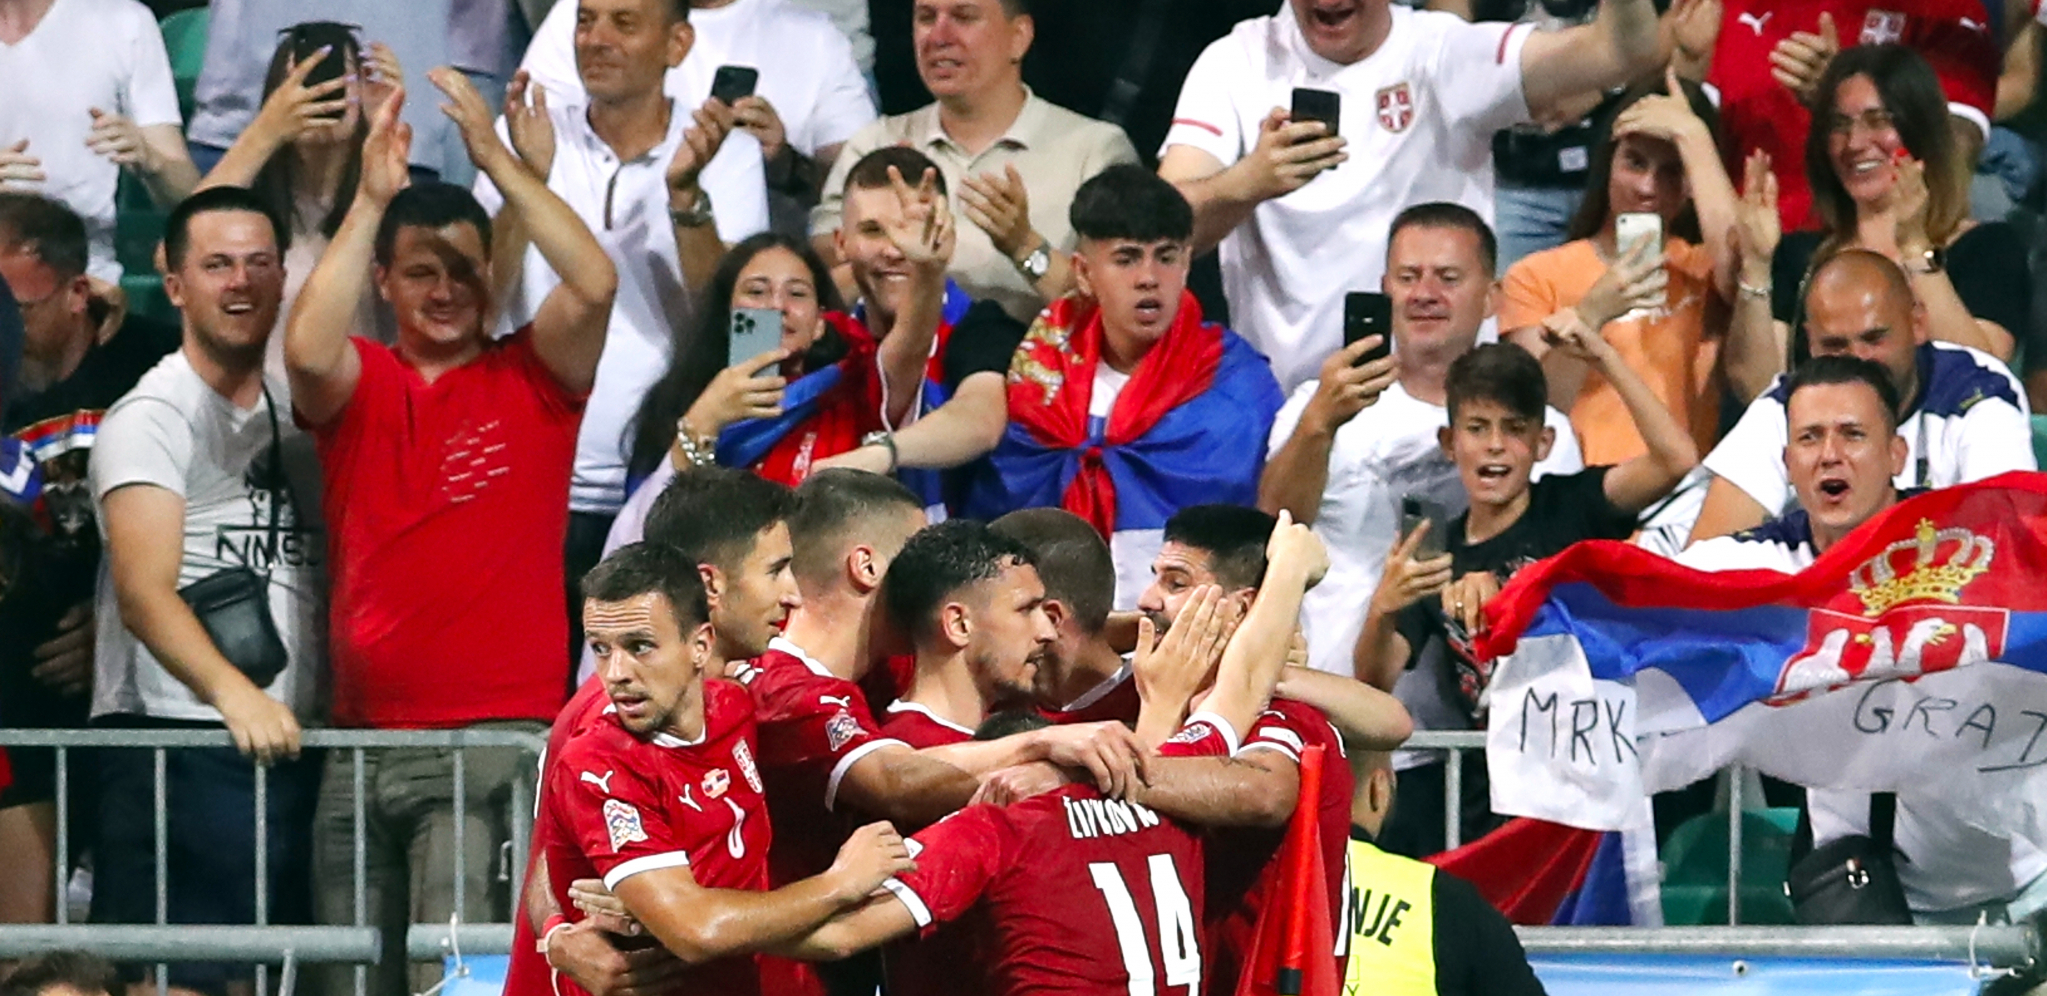 UŽASNA VEST PO "ORLOVE" UEFA žestoko kaznila Srbiju, pred praznim tribinama zbog rasizma